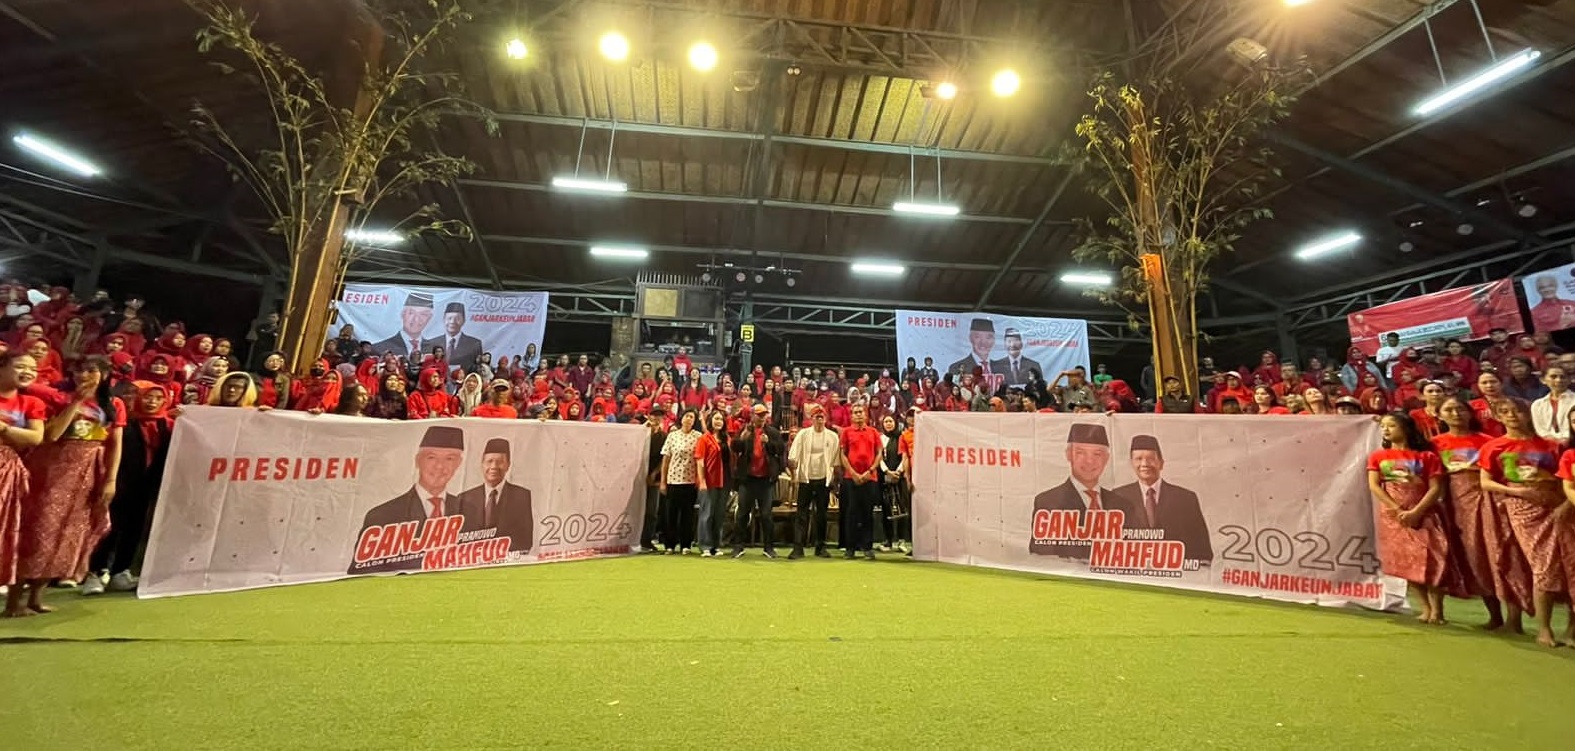 Ganjarkeun Jabar Kota Bandung melakukan deklarasi dukungan kepada pasangan Ganjar - Mahfud MD di Saung Angklung Udjo Jl. Pasir Layung No. 118 Kota Bandung.